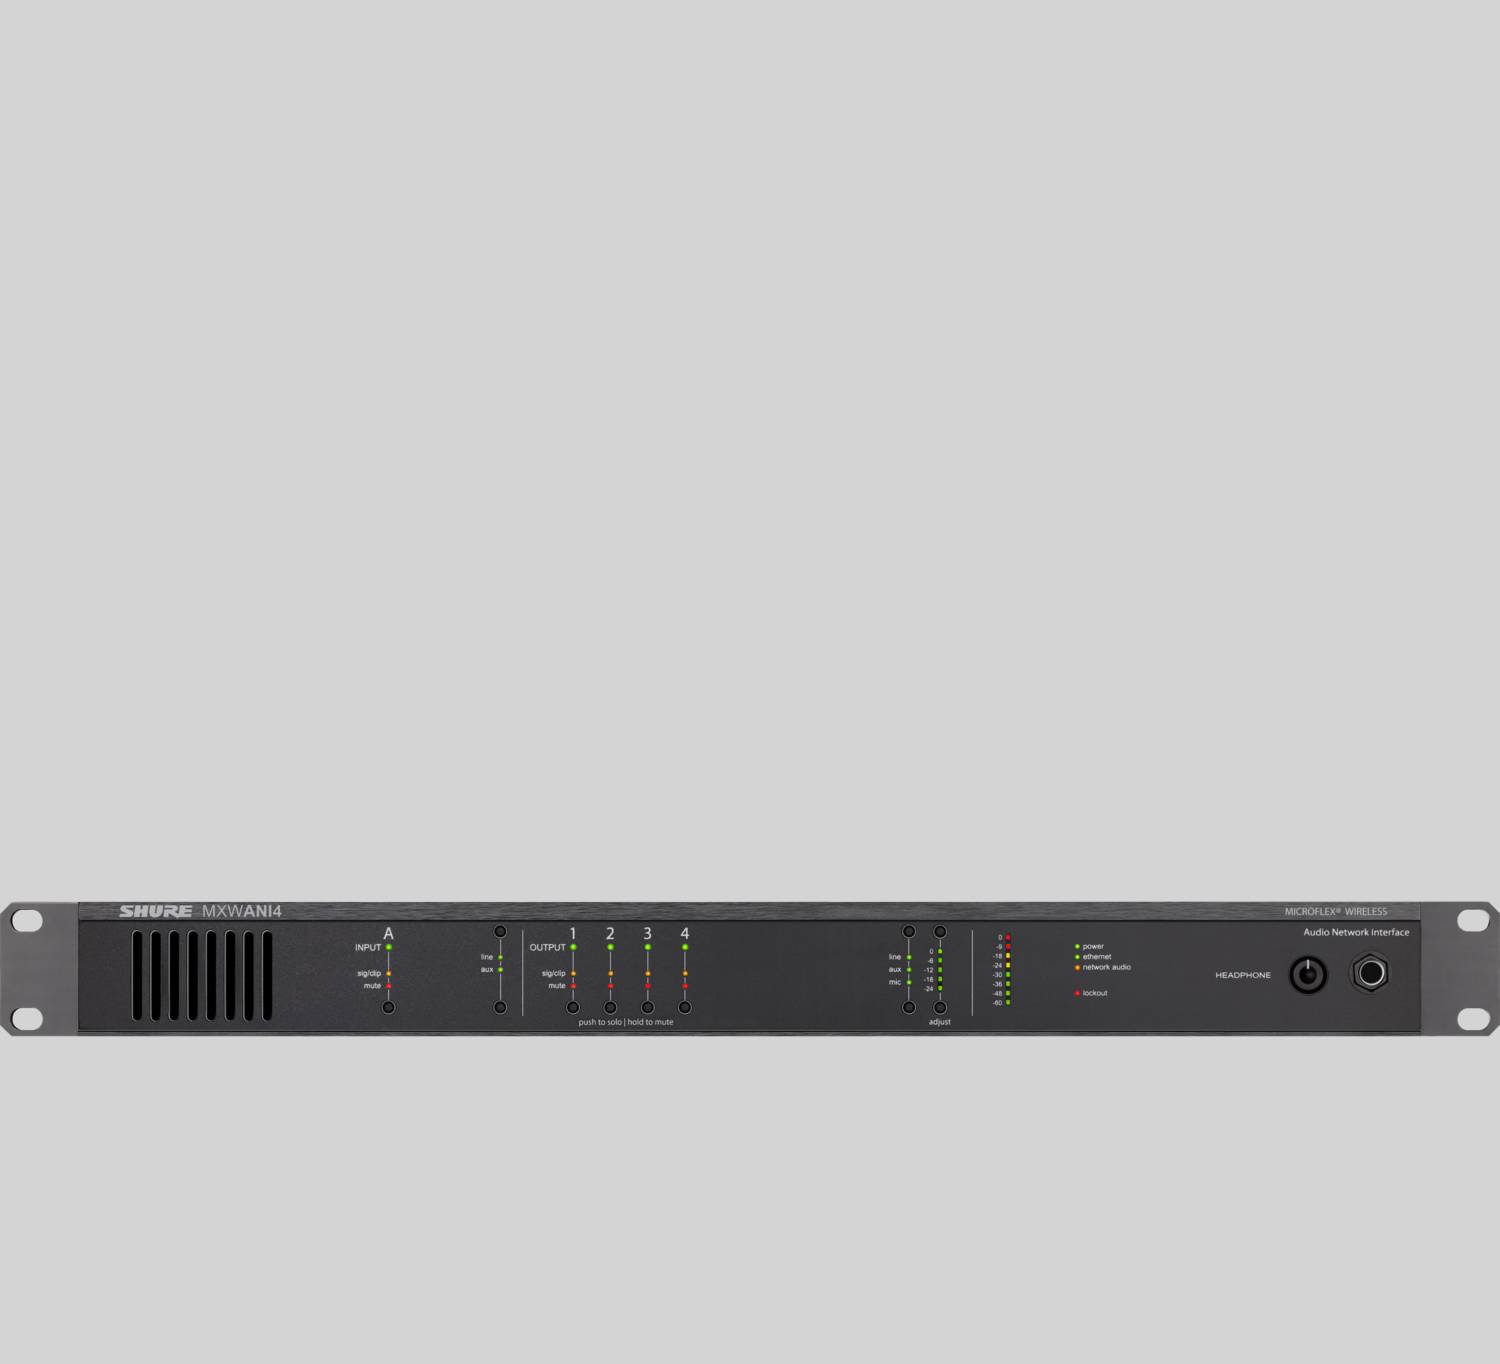 MXWANI4 - Audio Network Interface